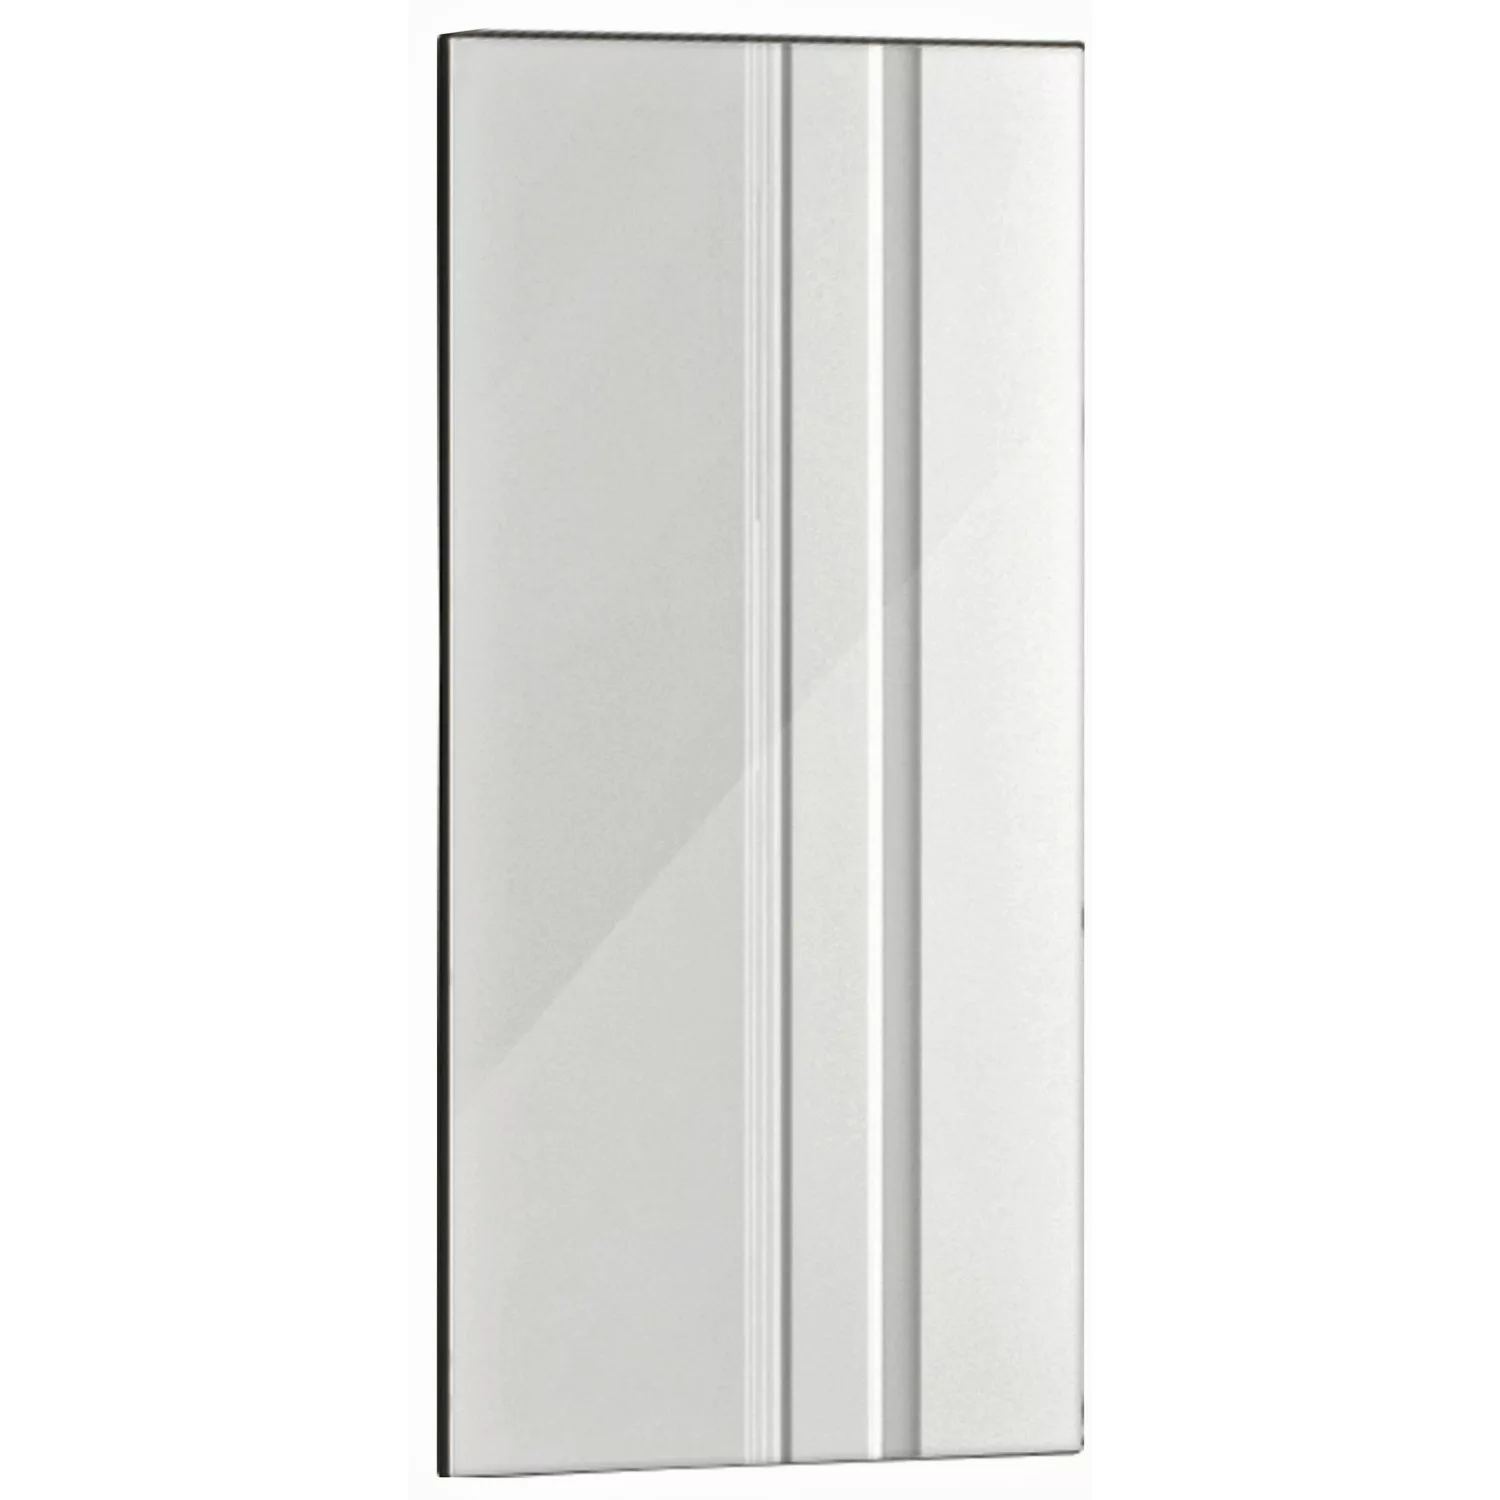 Ximax Glas Paneel Spiegel ohne Rahmen 600 mm x 900 mm 600 W günstig online kaufen